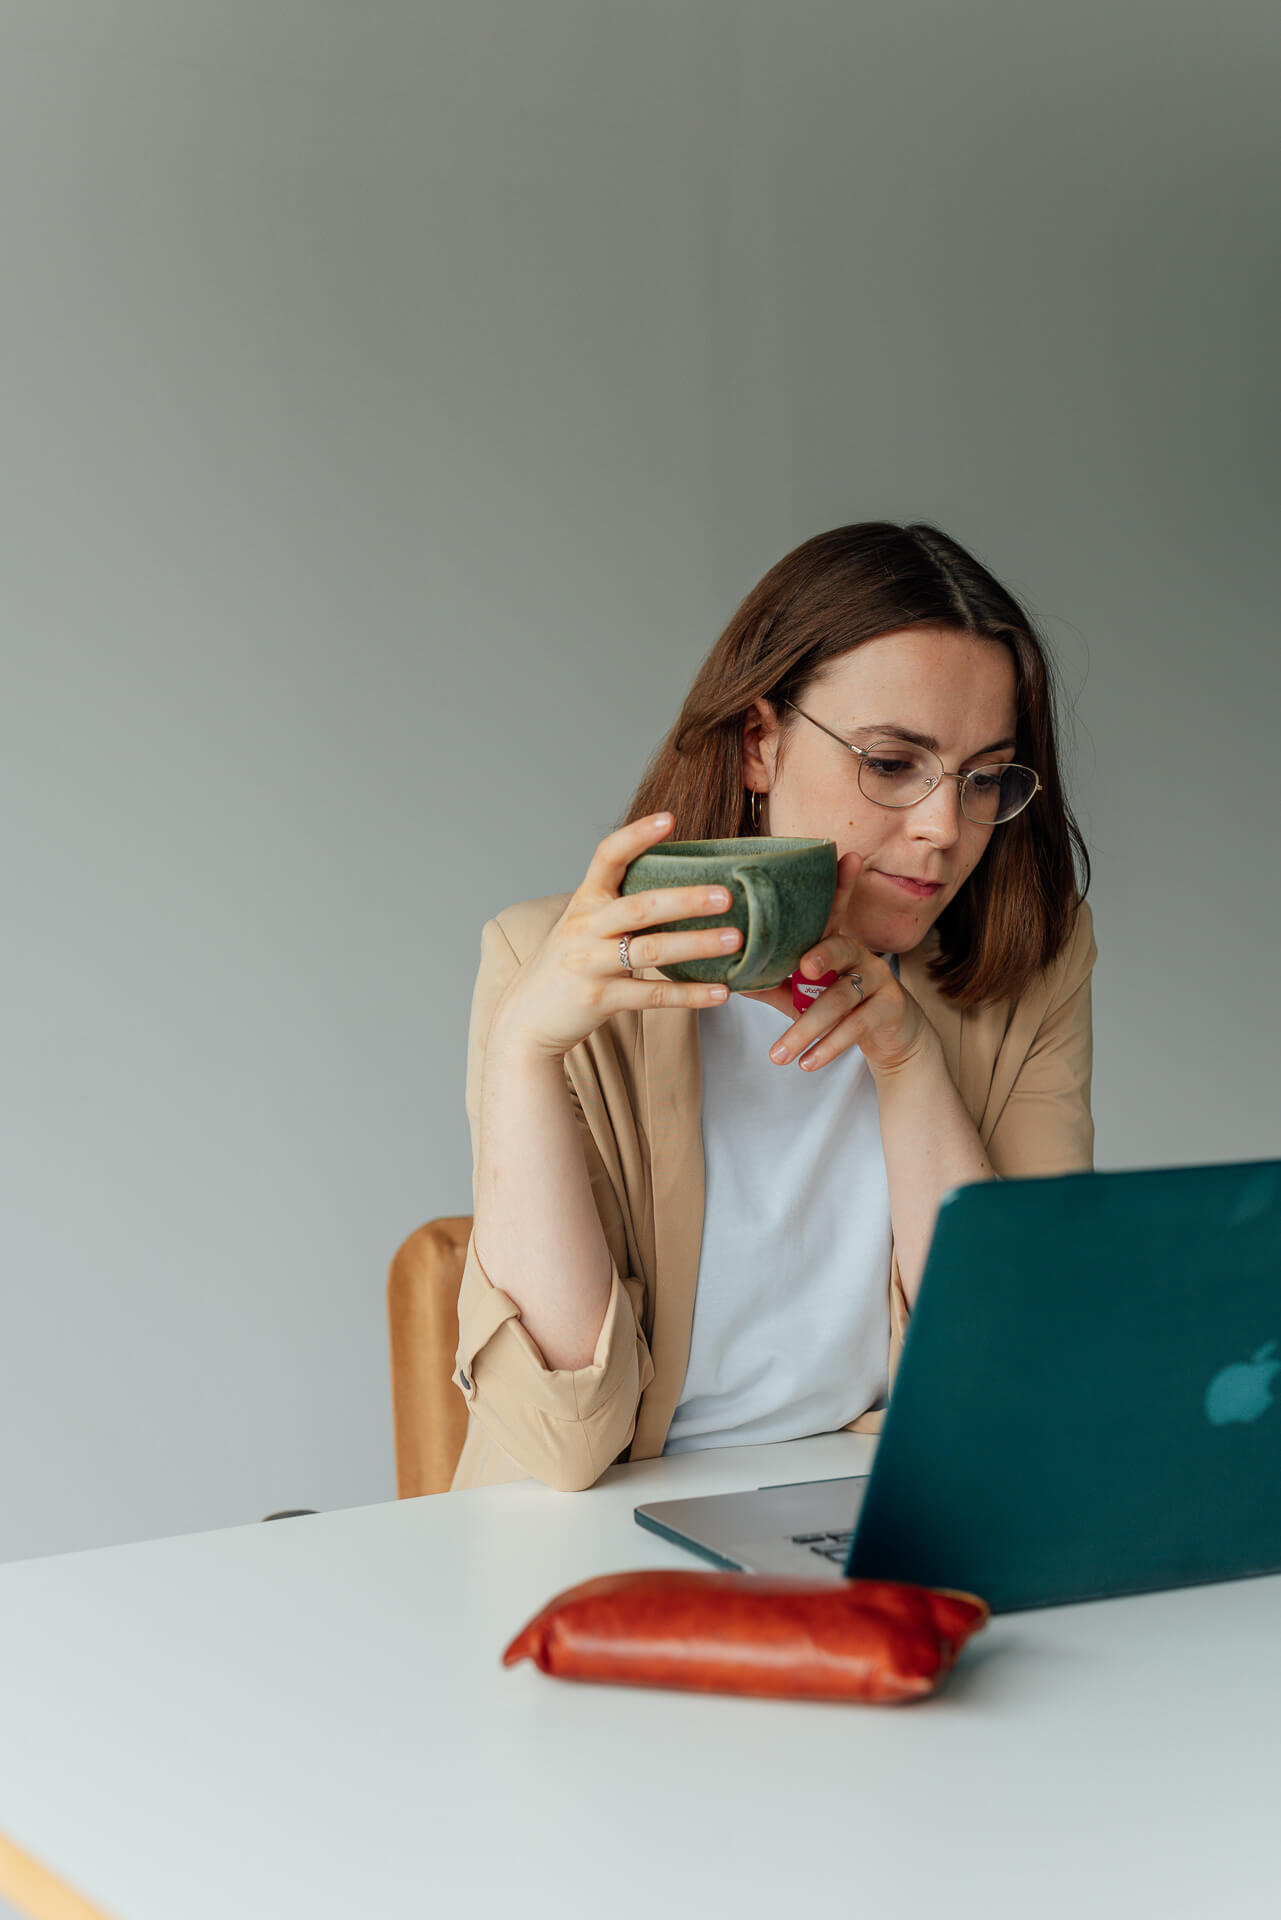 Portrait einer Frau die am Schreibtisch sitzt, sie hat dabei eine Tasse in der Hand und schaut in den Laptop. Das Bild ist während eines Brand Shoots entstanden. 